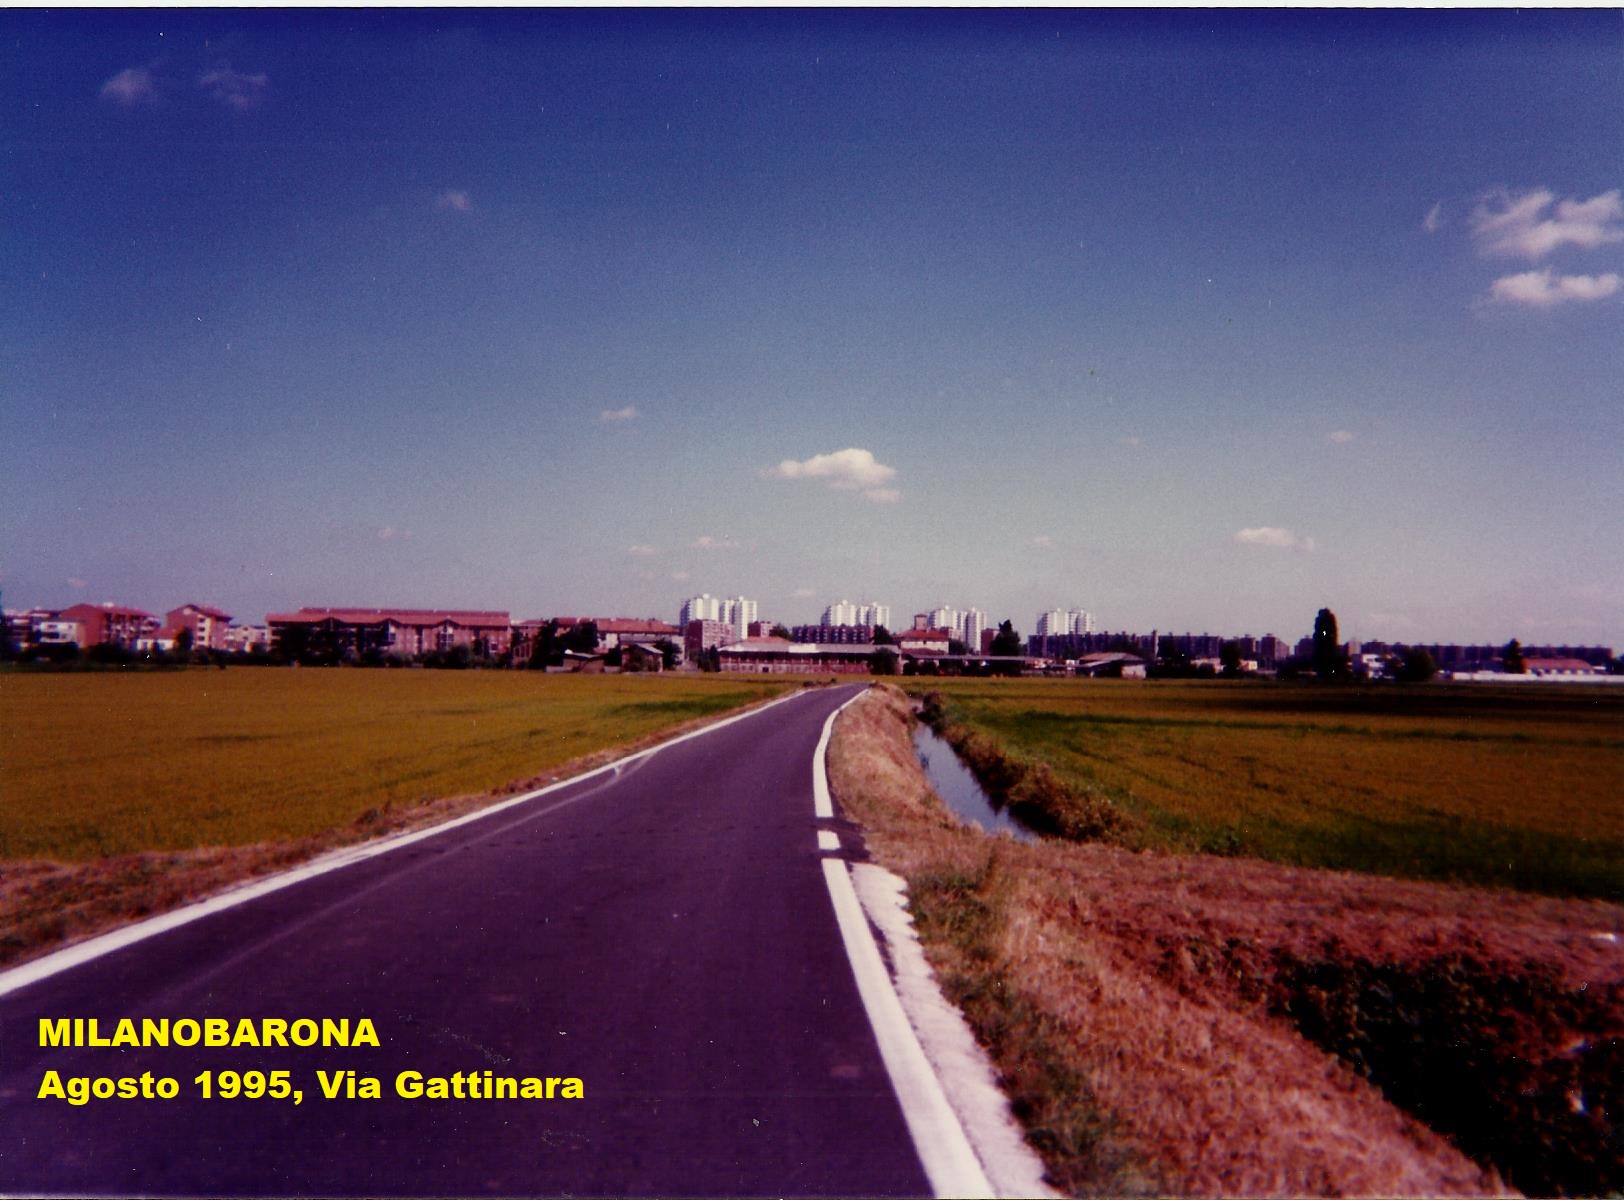 Linea di confine Comuni di Milano-Barona e Assago. Via Gattinara. Fonte immagine proprietaria.